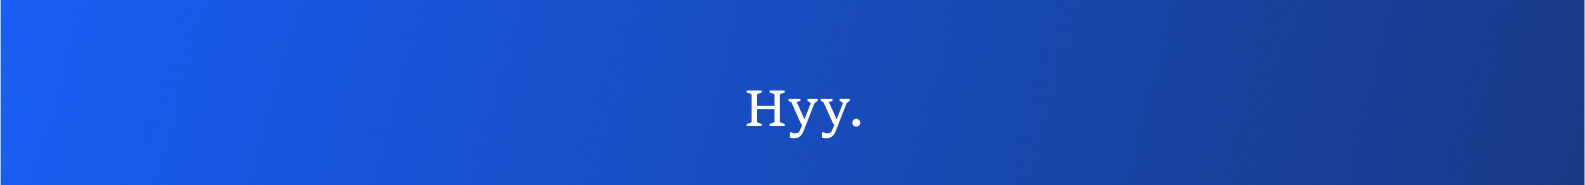 Hyy Dé's profile banner